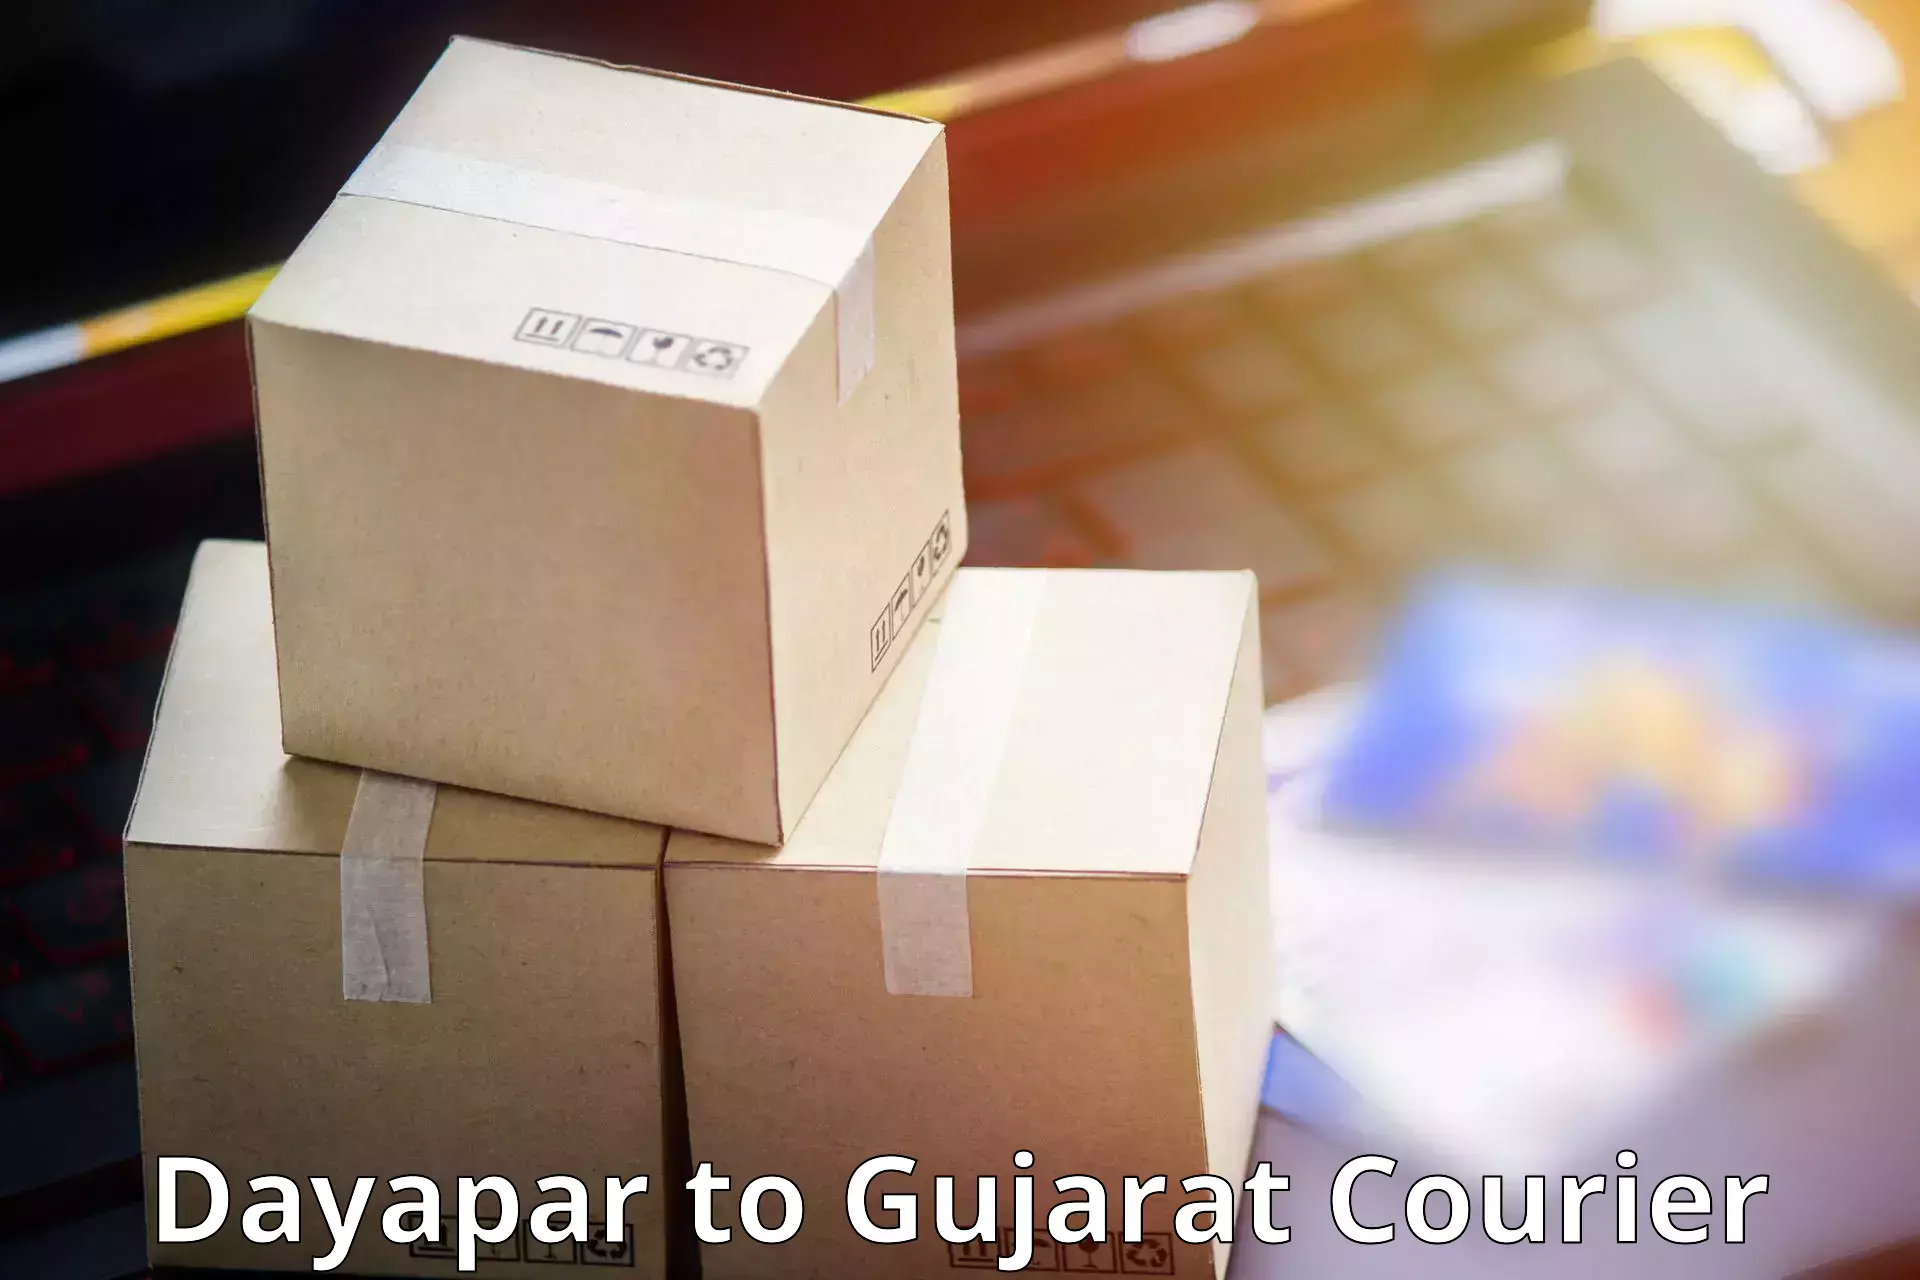 High-performance logistics Dayapar to Narmada Gujarat